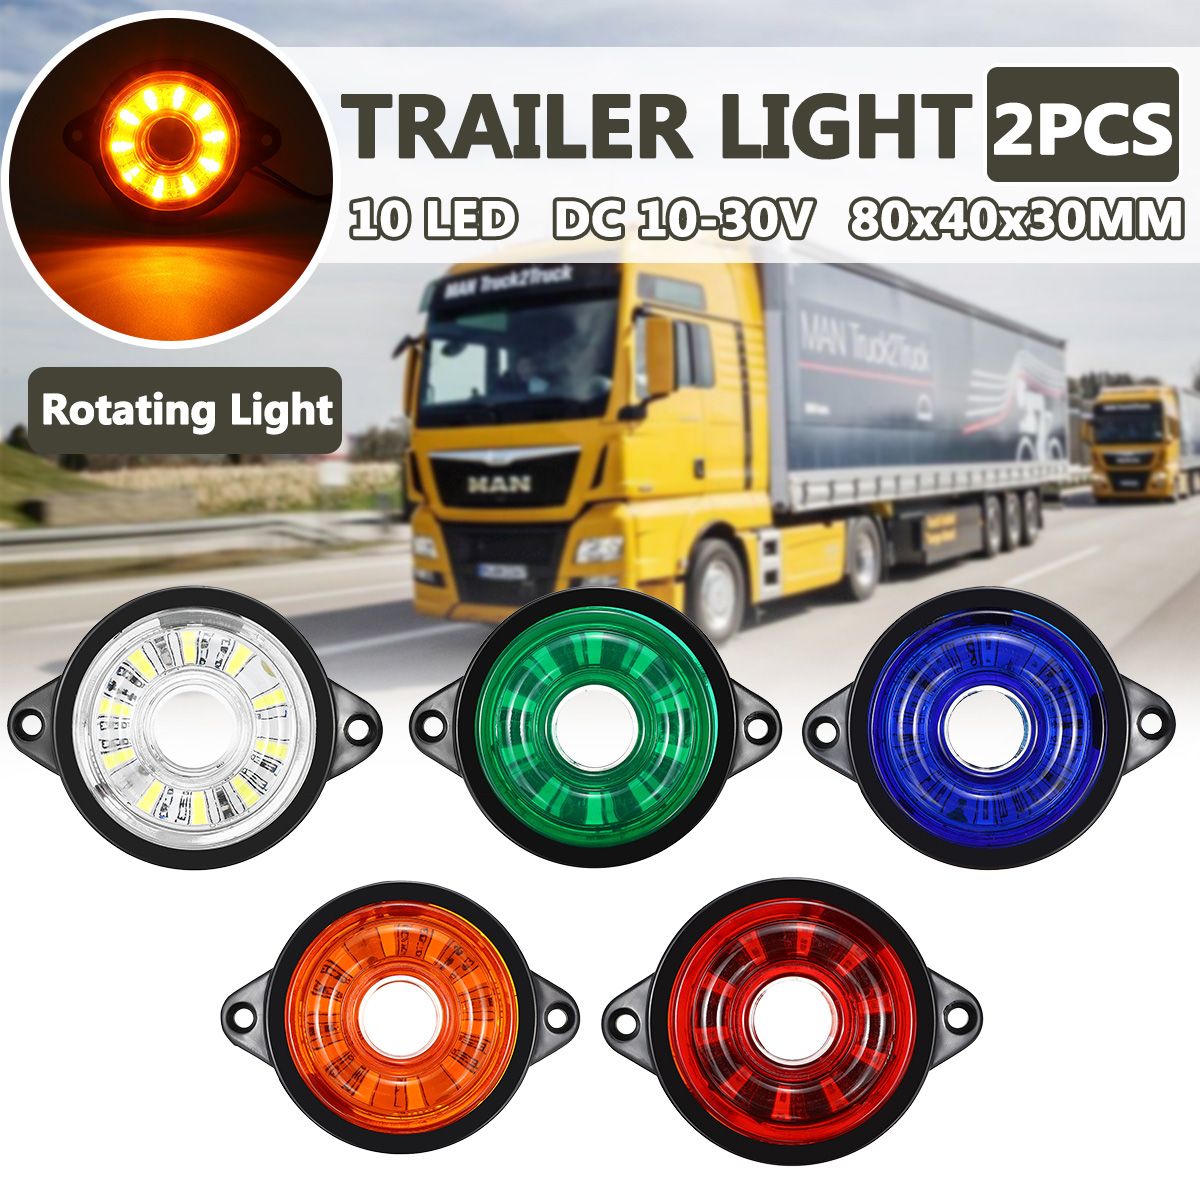 2PCS-10-30V-Trailer-Side-Lights-10-LED-Marker-Lamp-Truck-Caravan-Clearance-1742169